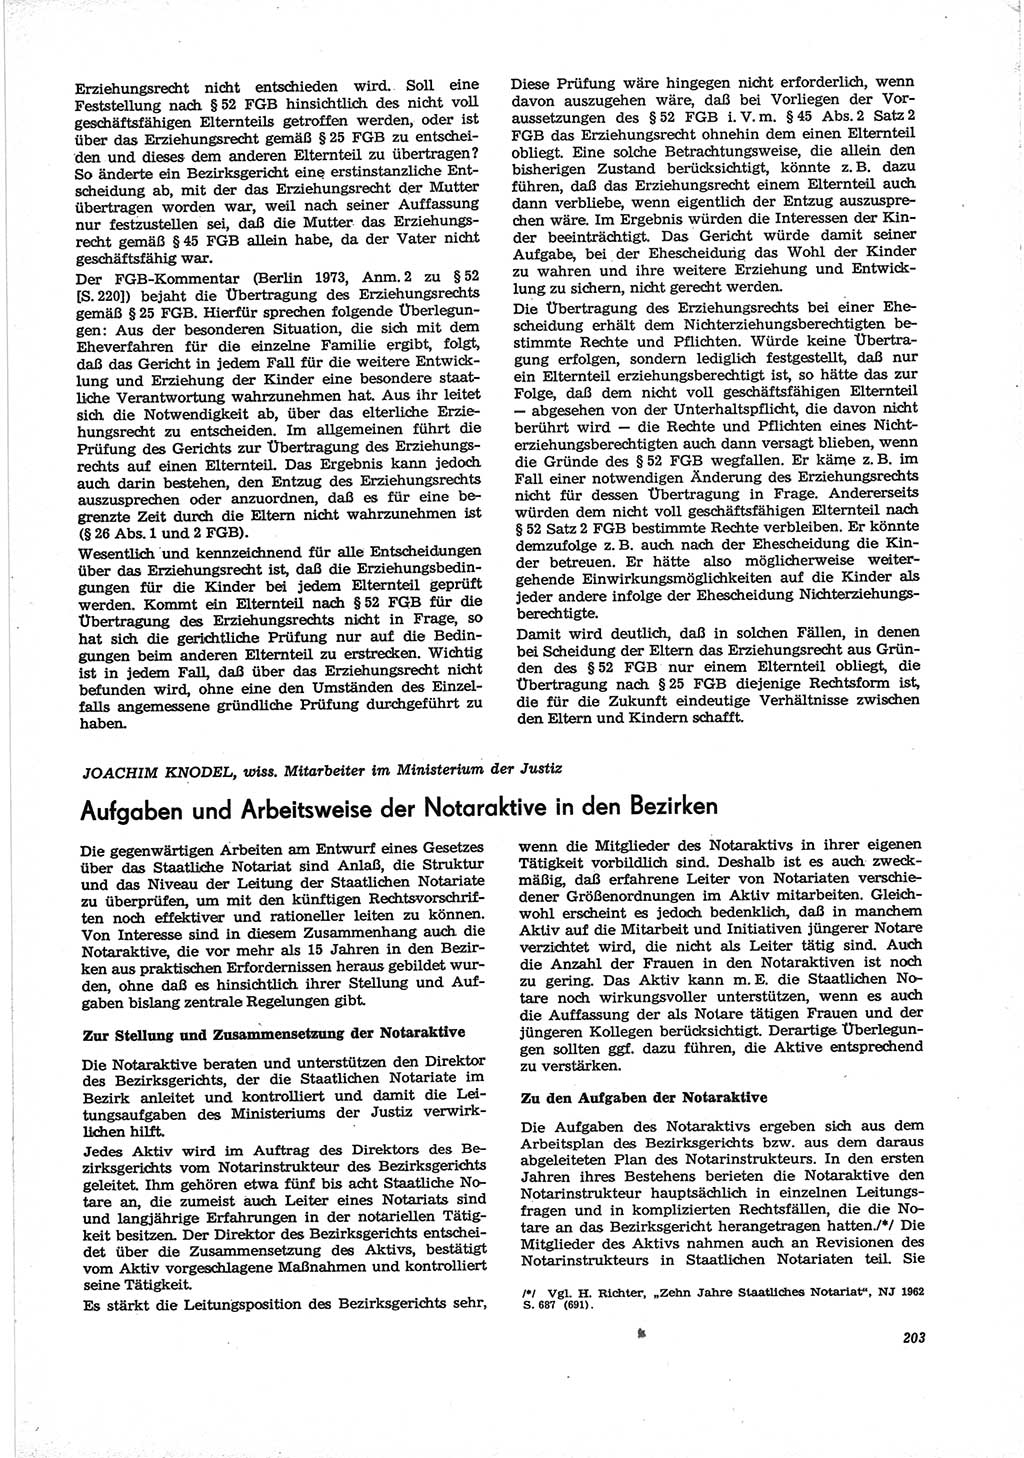 Neue Justiz (NJ), Zeitschrift für Recht und Rechtswissenschaft [Deutsche Demokratische Republik (DDR)], 28. Jahrgang 1974, Seite 203 (NJ DDR 1974, S. 203)